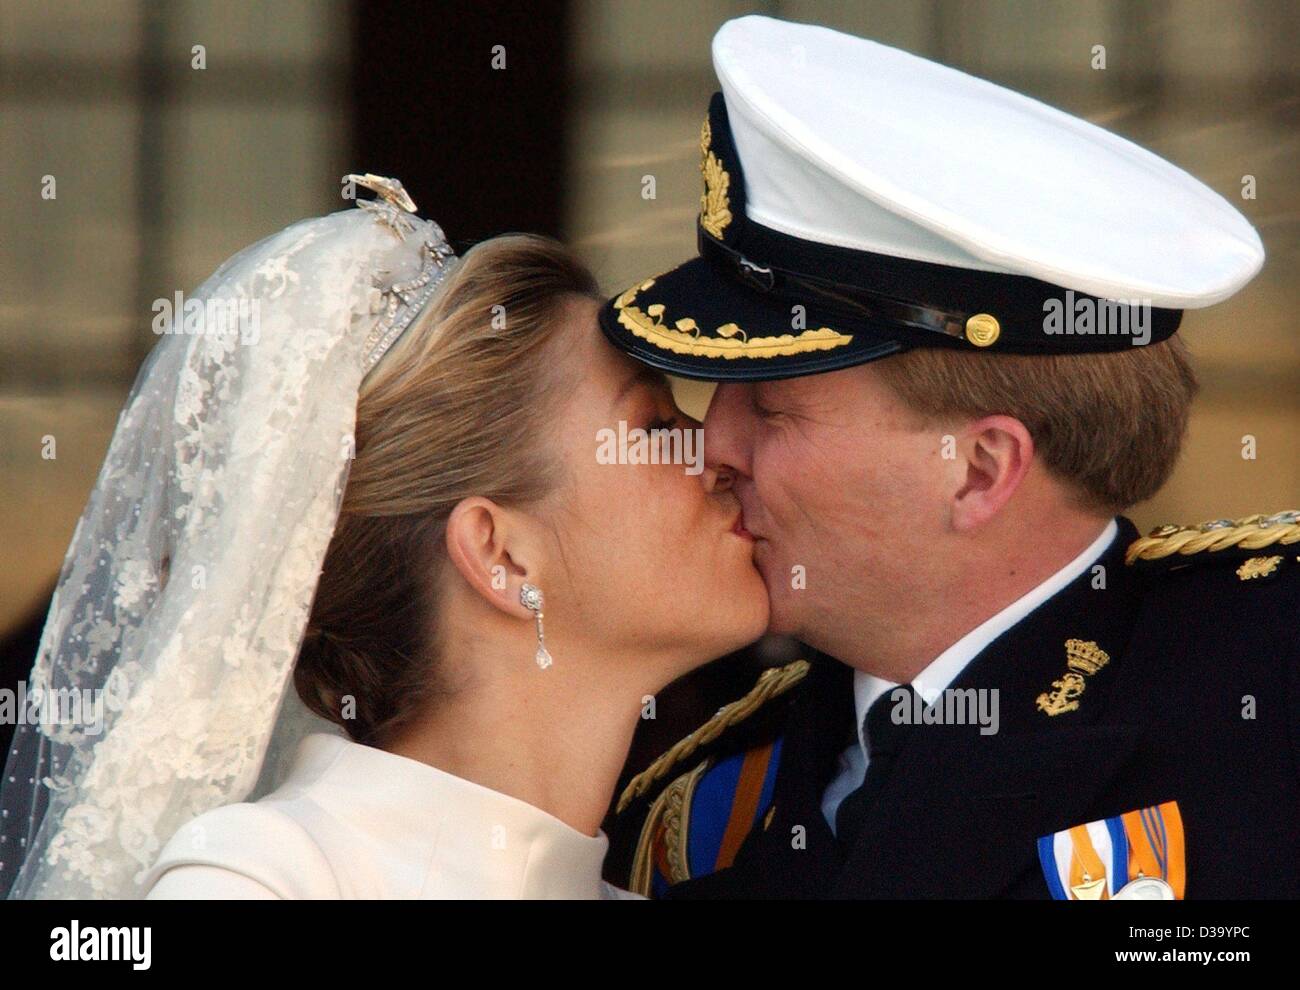 (Dpa) - Royal Wedding en Amsterdam: Crownprince holandés Willem Alexander besa a su esposa, la Princesa Máxima Zorreguieta en el balcón del Palacio Real de Amsterdam después de su boda, el 2 de febrero de 2002. Foto de stock